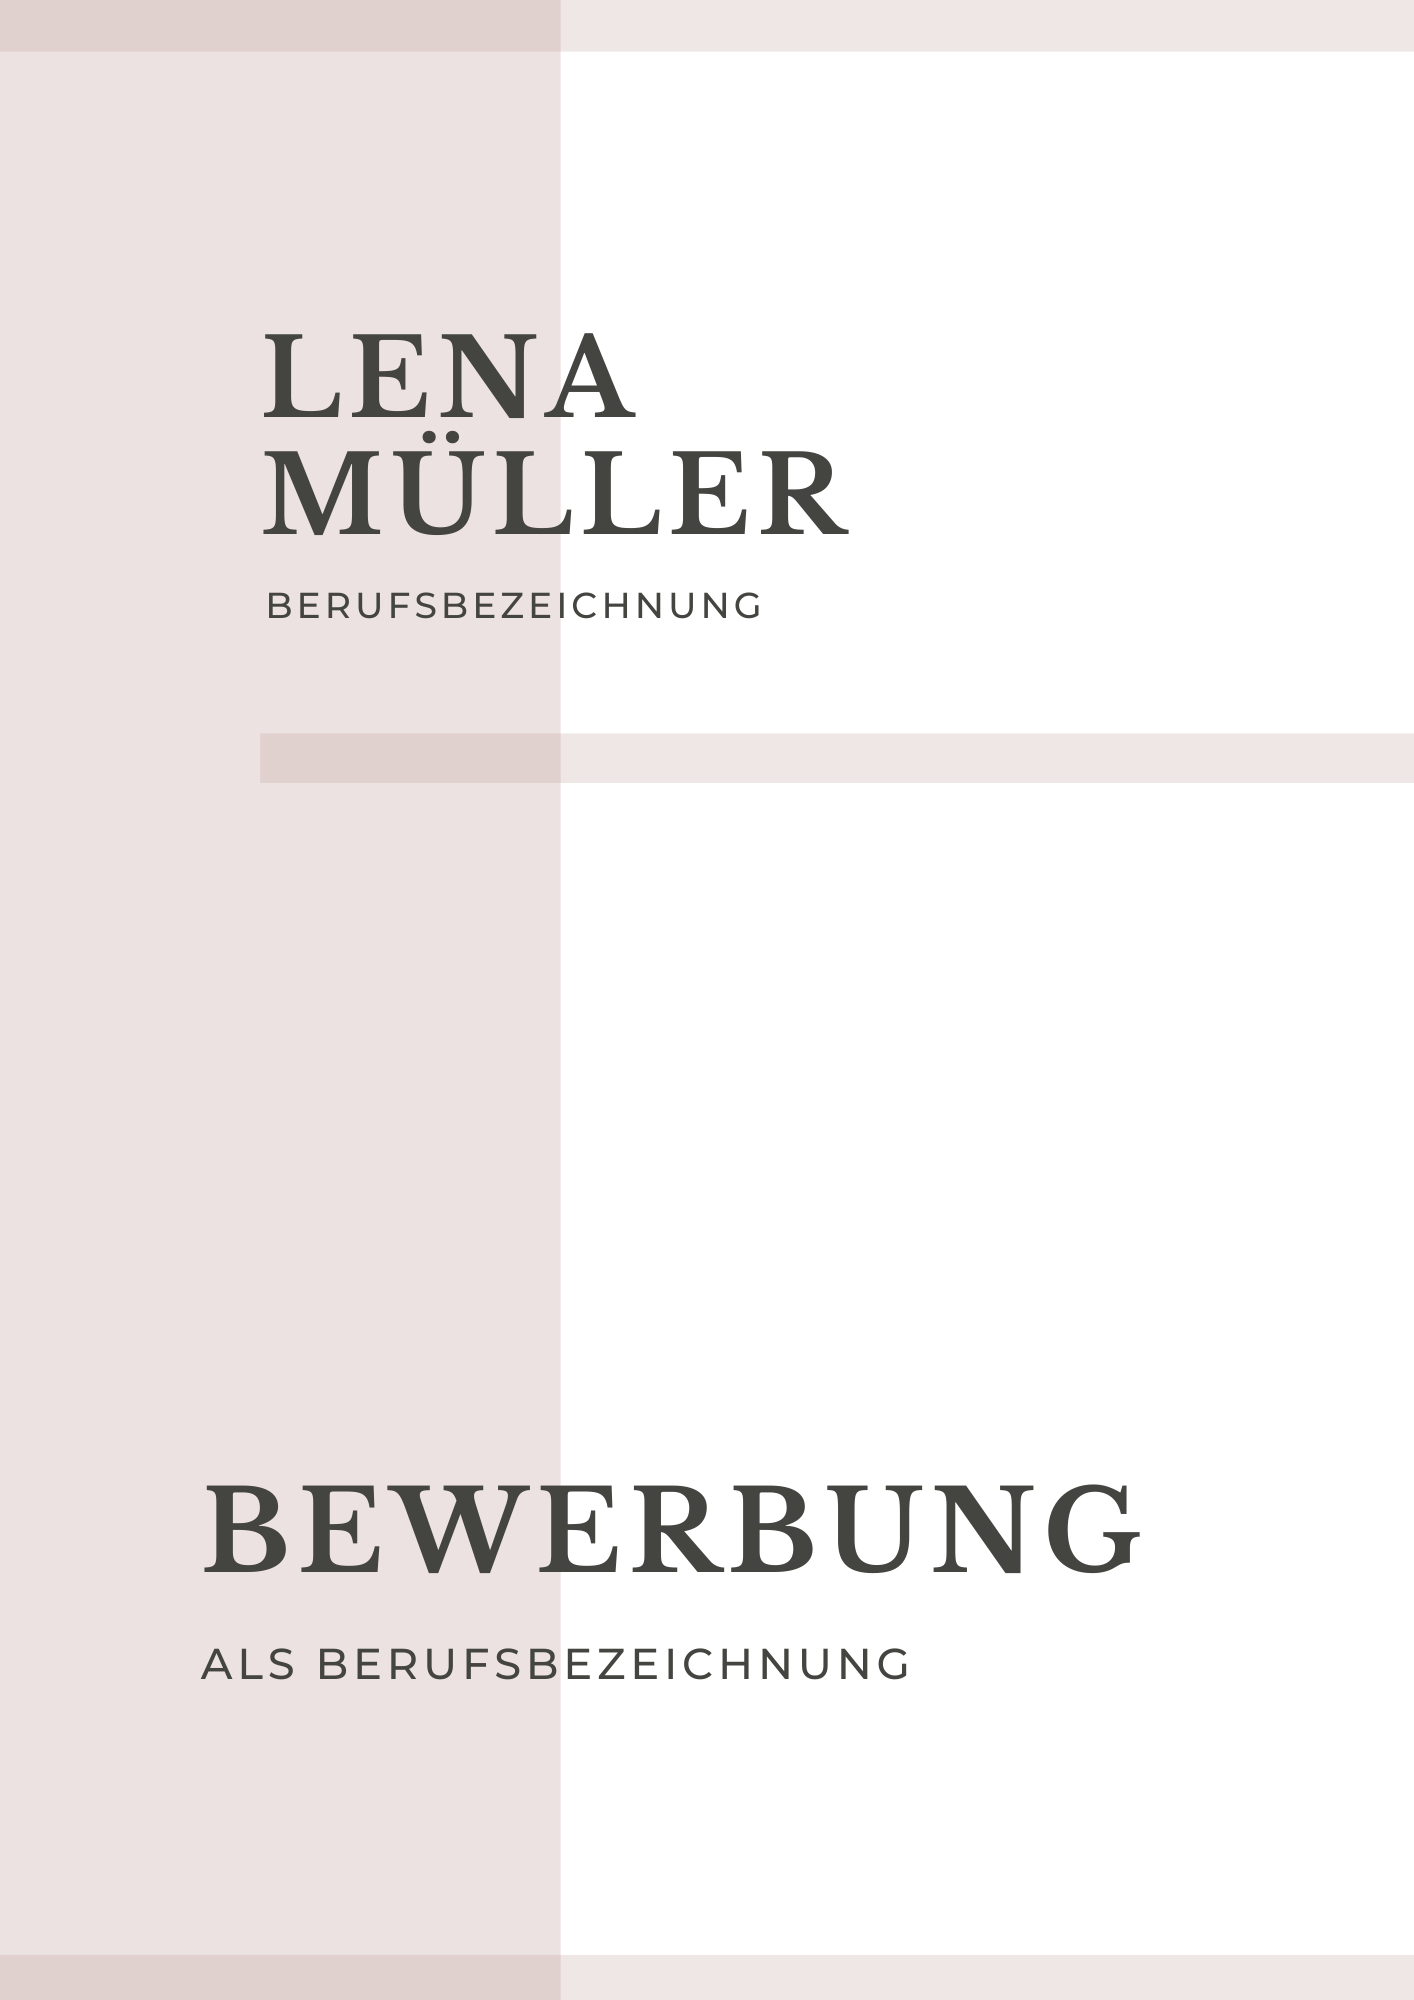 Bewerbungsvorlagen Set Lena Müller rosa